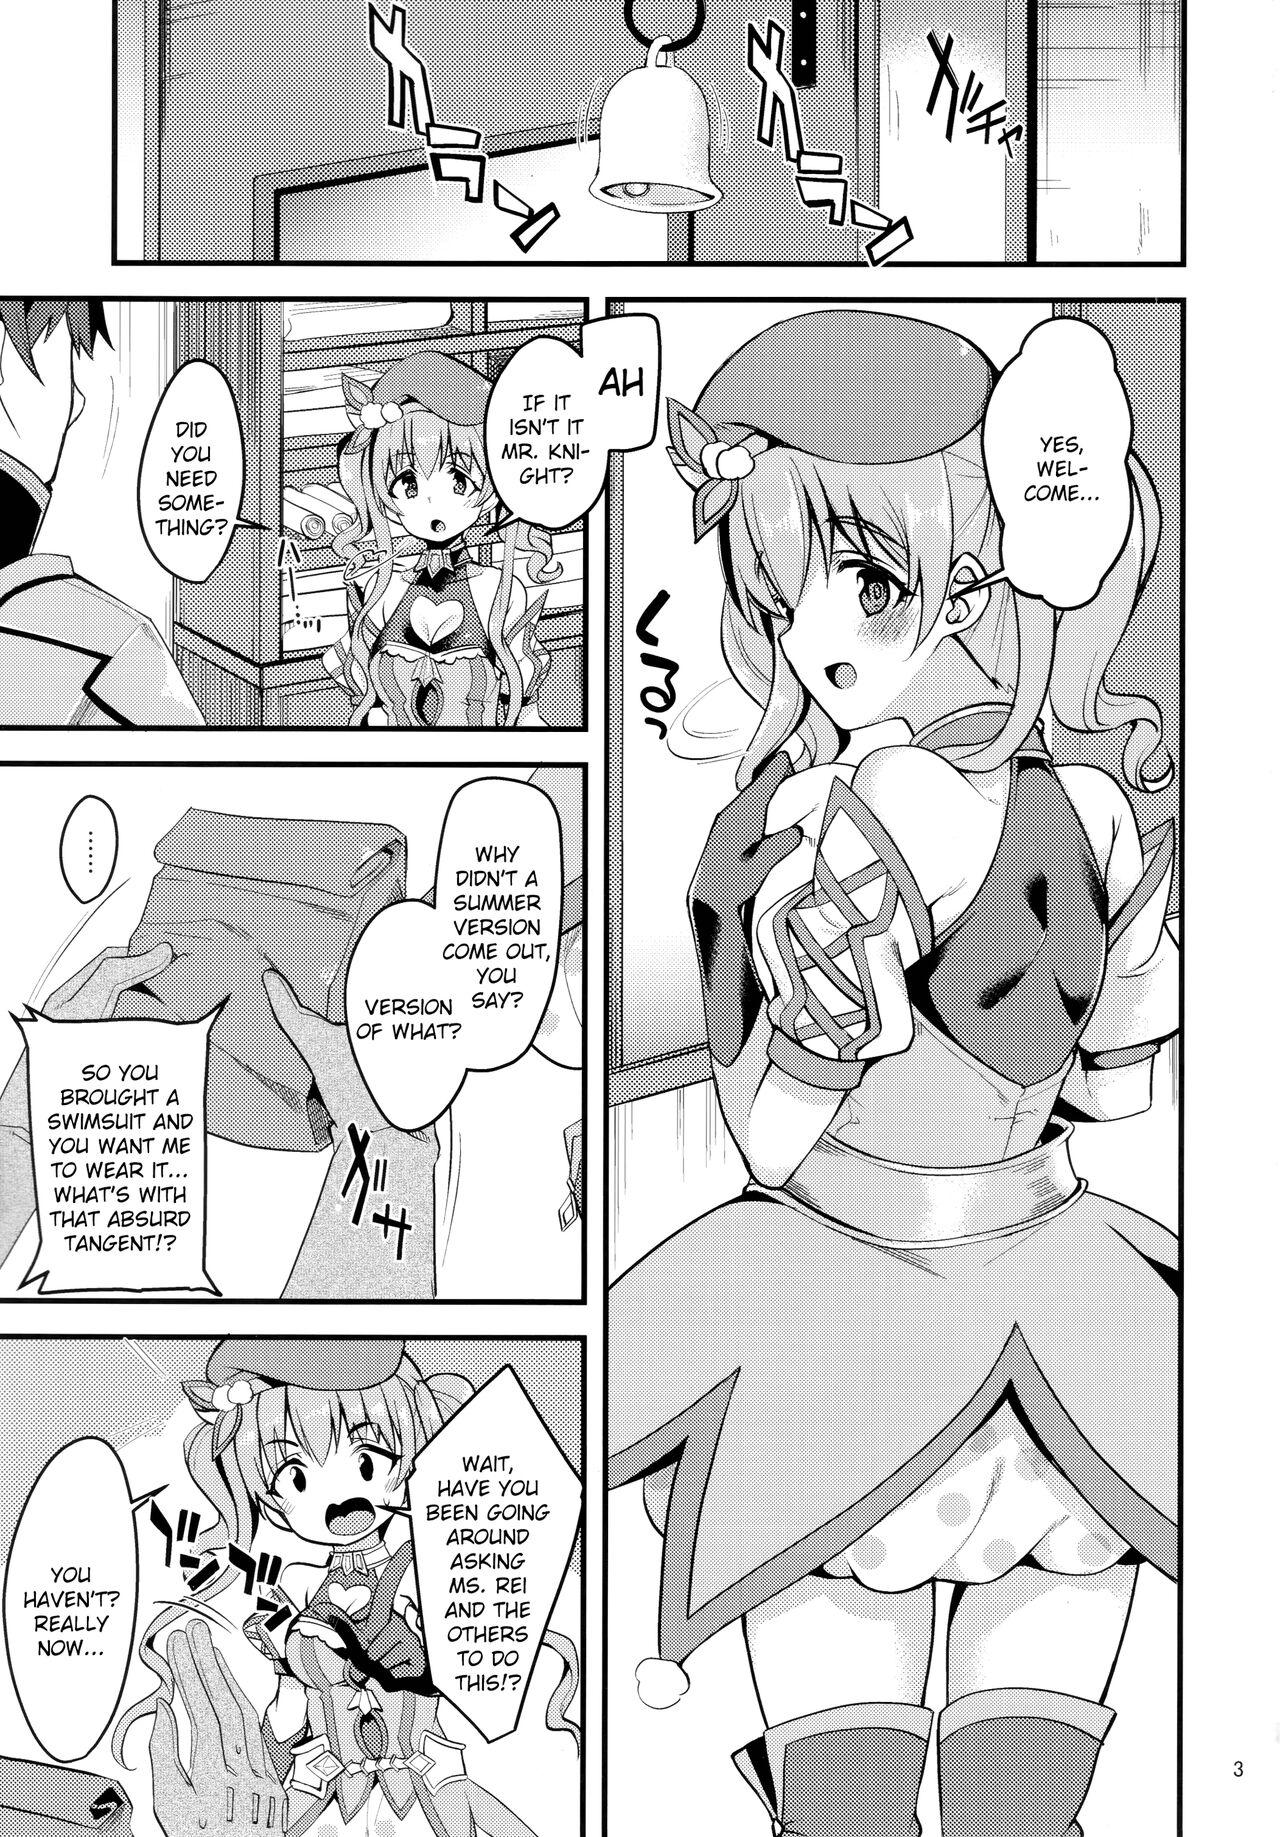 Analfucking Tsumugi Make Heroine Move!! 02 - Princess connect Fuck - Page 2